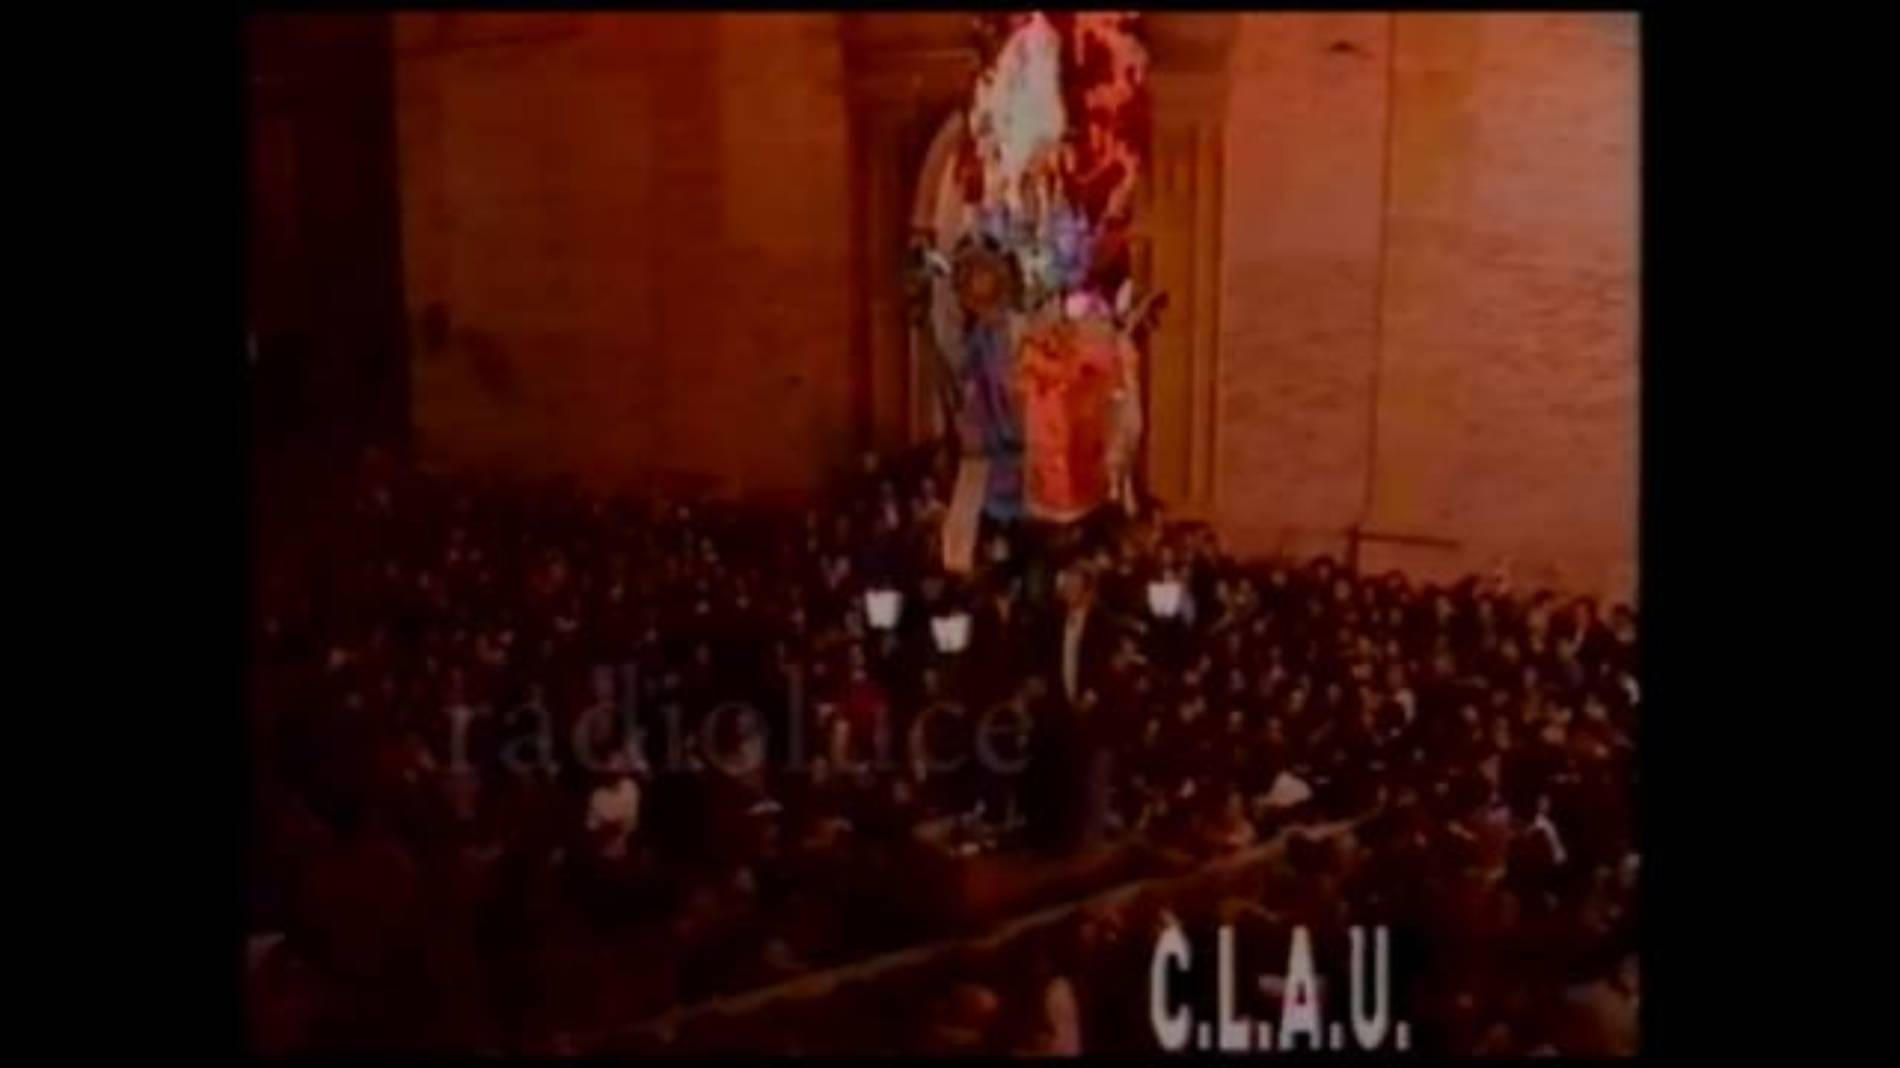 Il video “U TRUNU” realizzato dall’Università di Torino nel 1993